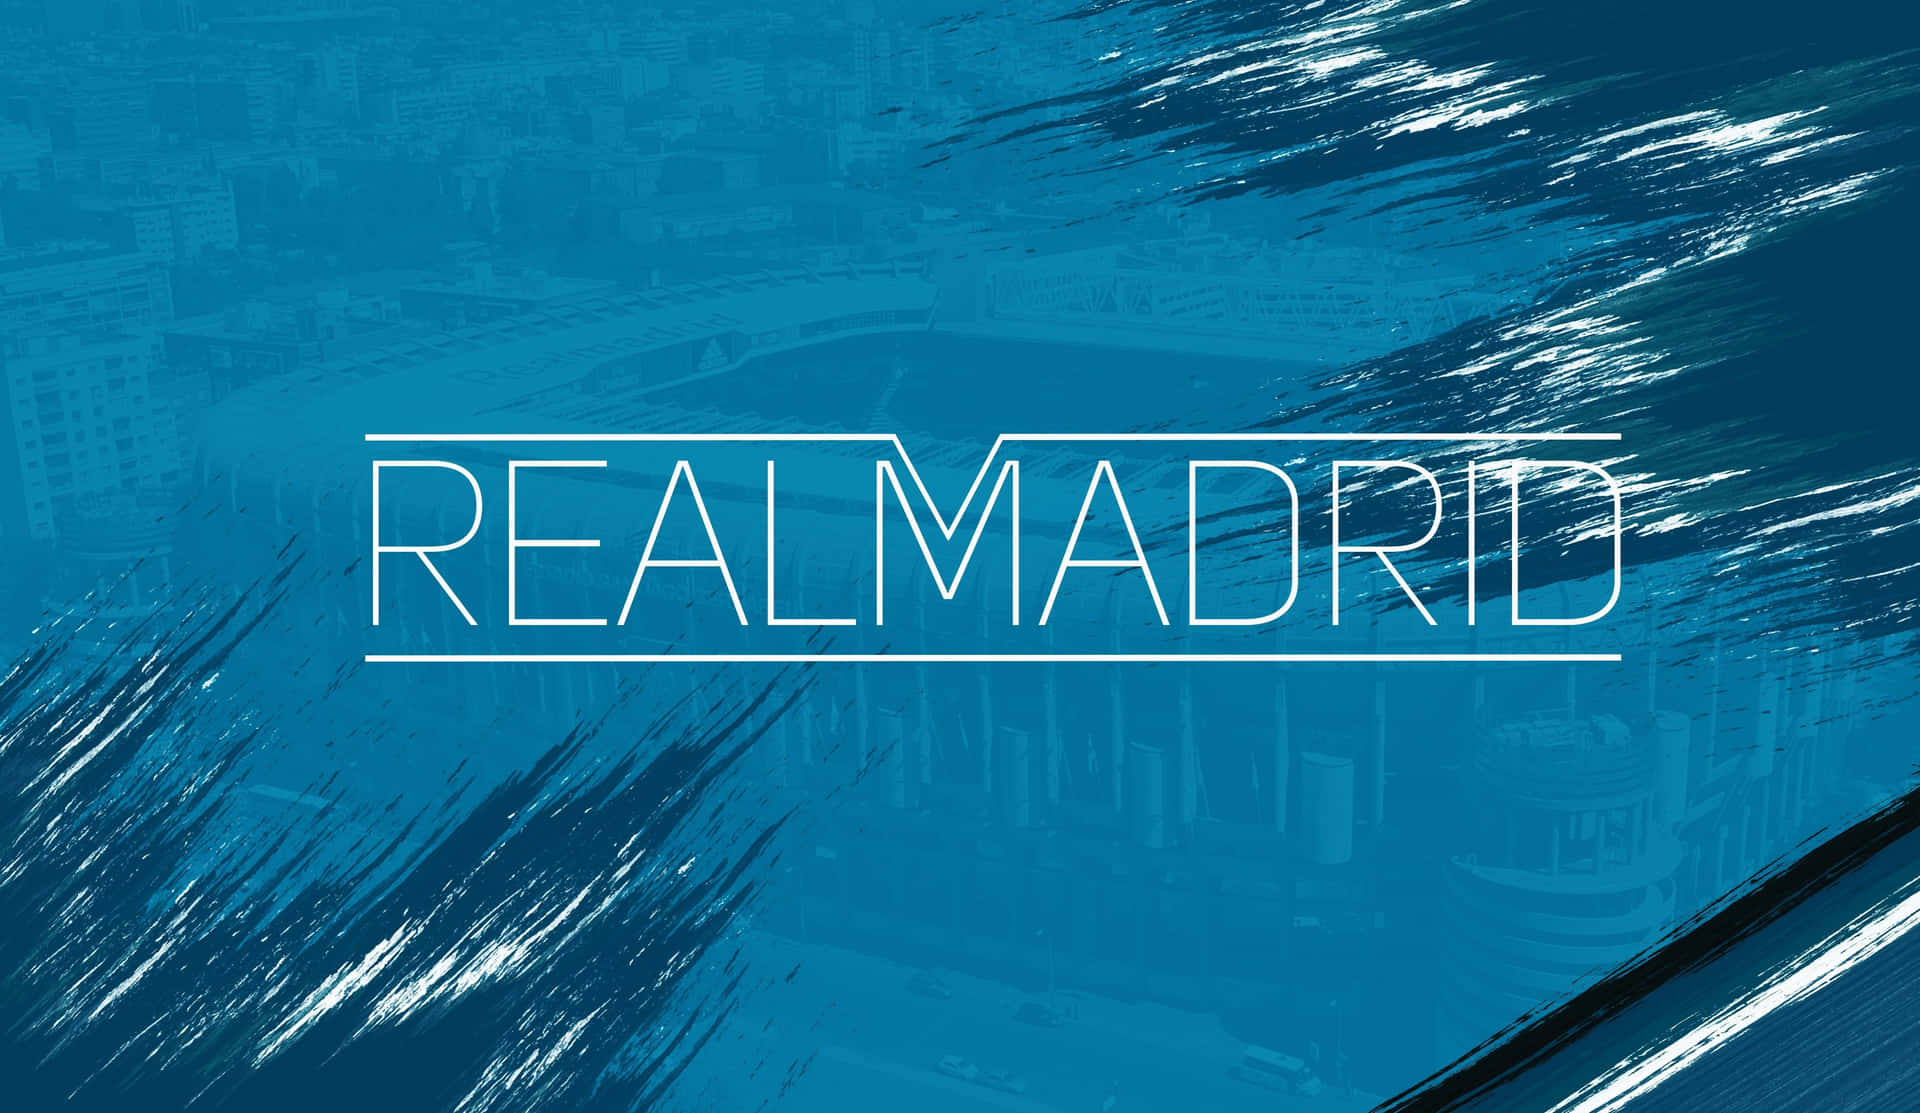 Plano De Fundo Do Real Madrid